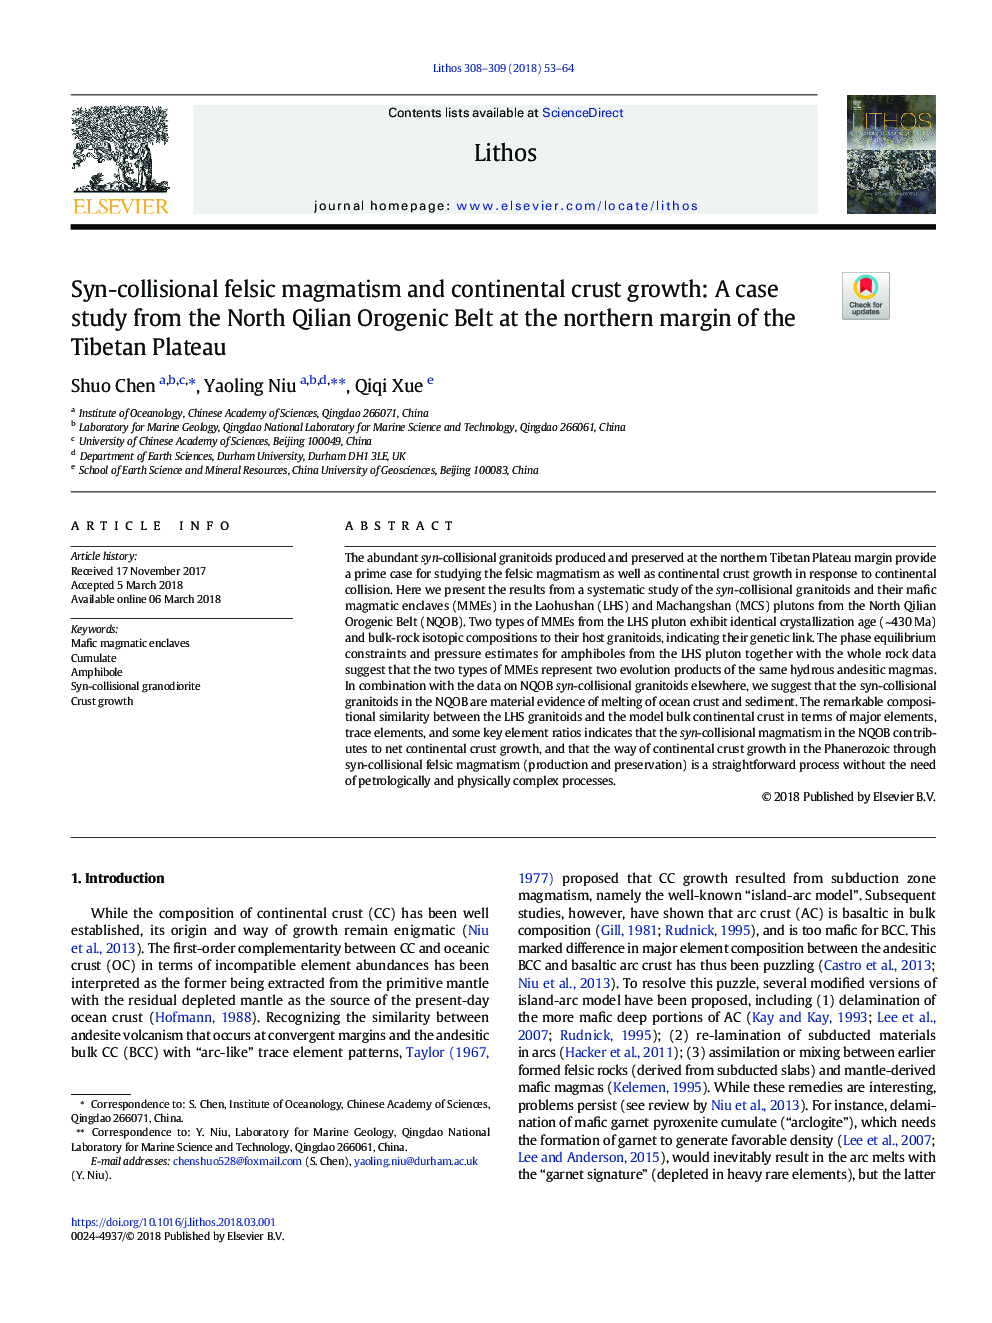 ماگماتیسم فلزی و رشد قارهای قارچی: مطالعات موردی از کمربند اورژنی شمالی قلیان در حاشیه شمالی فلات تبتی